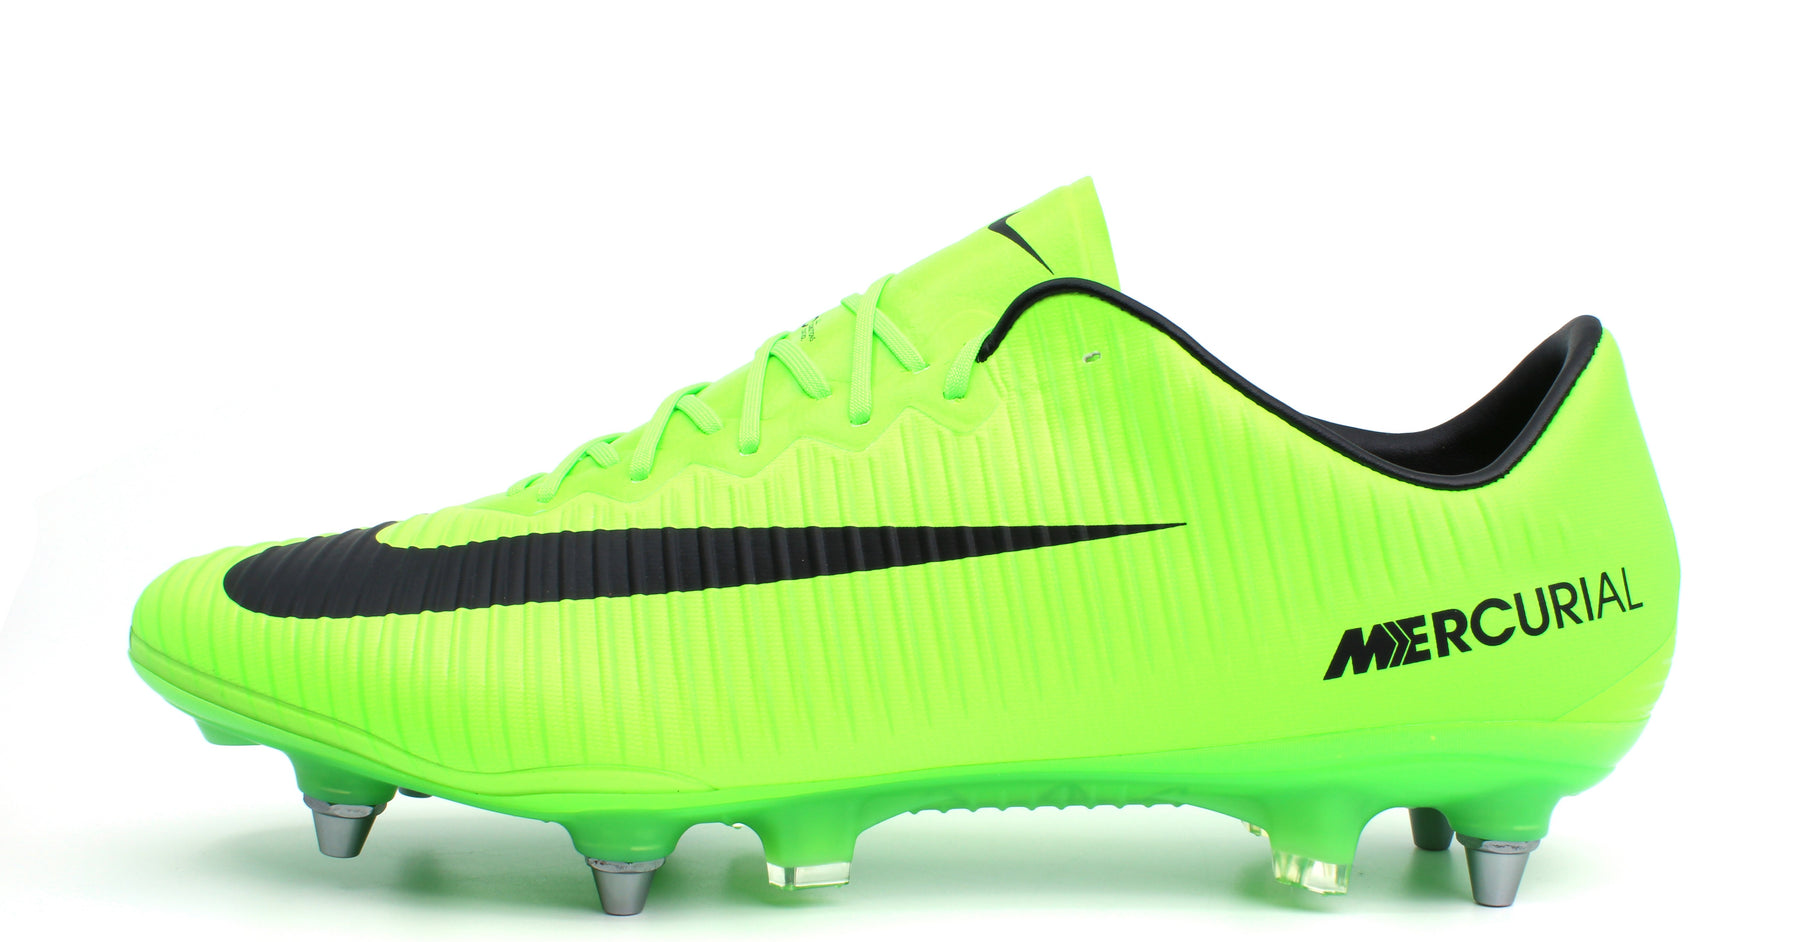 Lijkenhuis Onafhankelijkheid Religieus Nike Mercurial Vapor 11 SG Pro Electric Green/Black/Flash Lime (831941 –  Retro Soccer Cleats